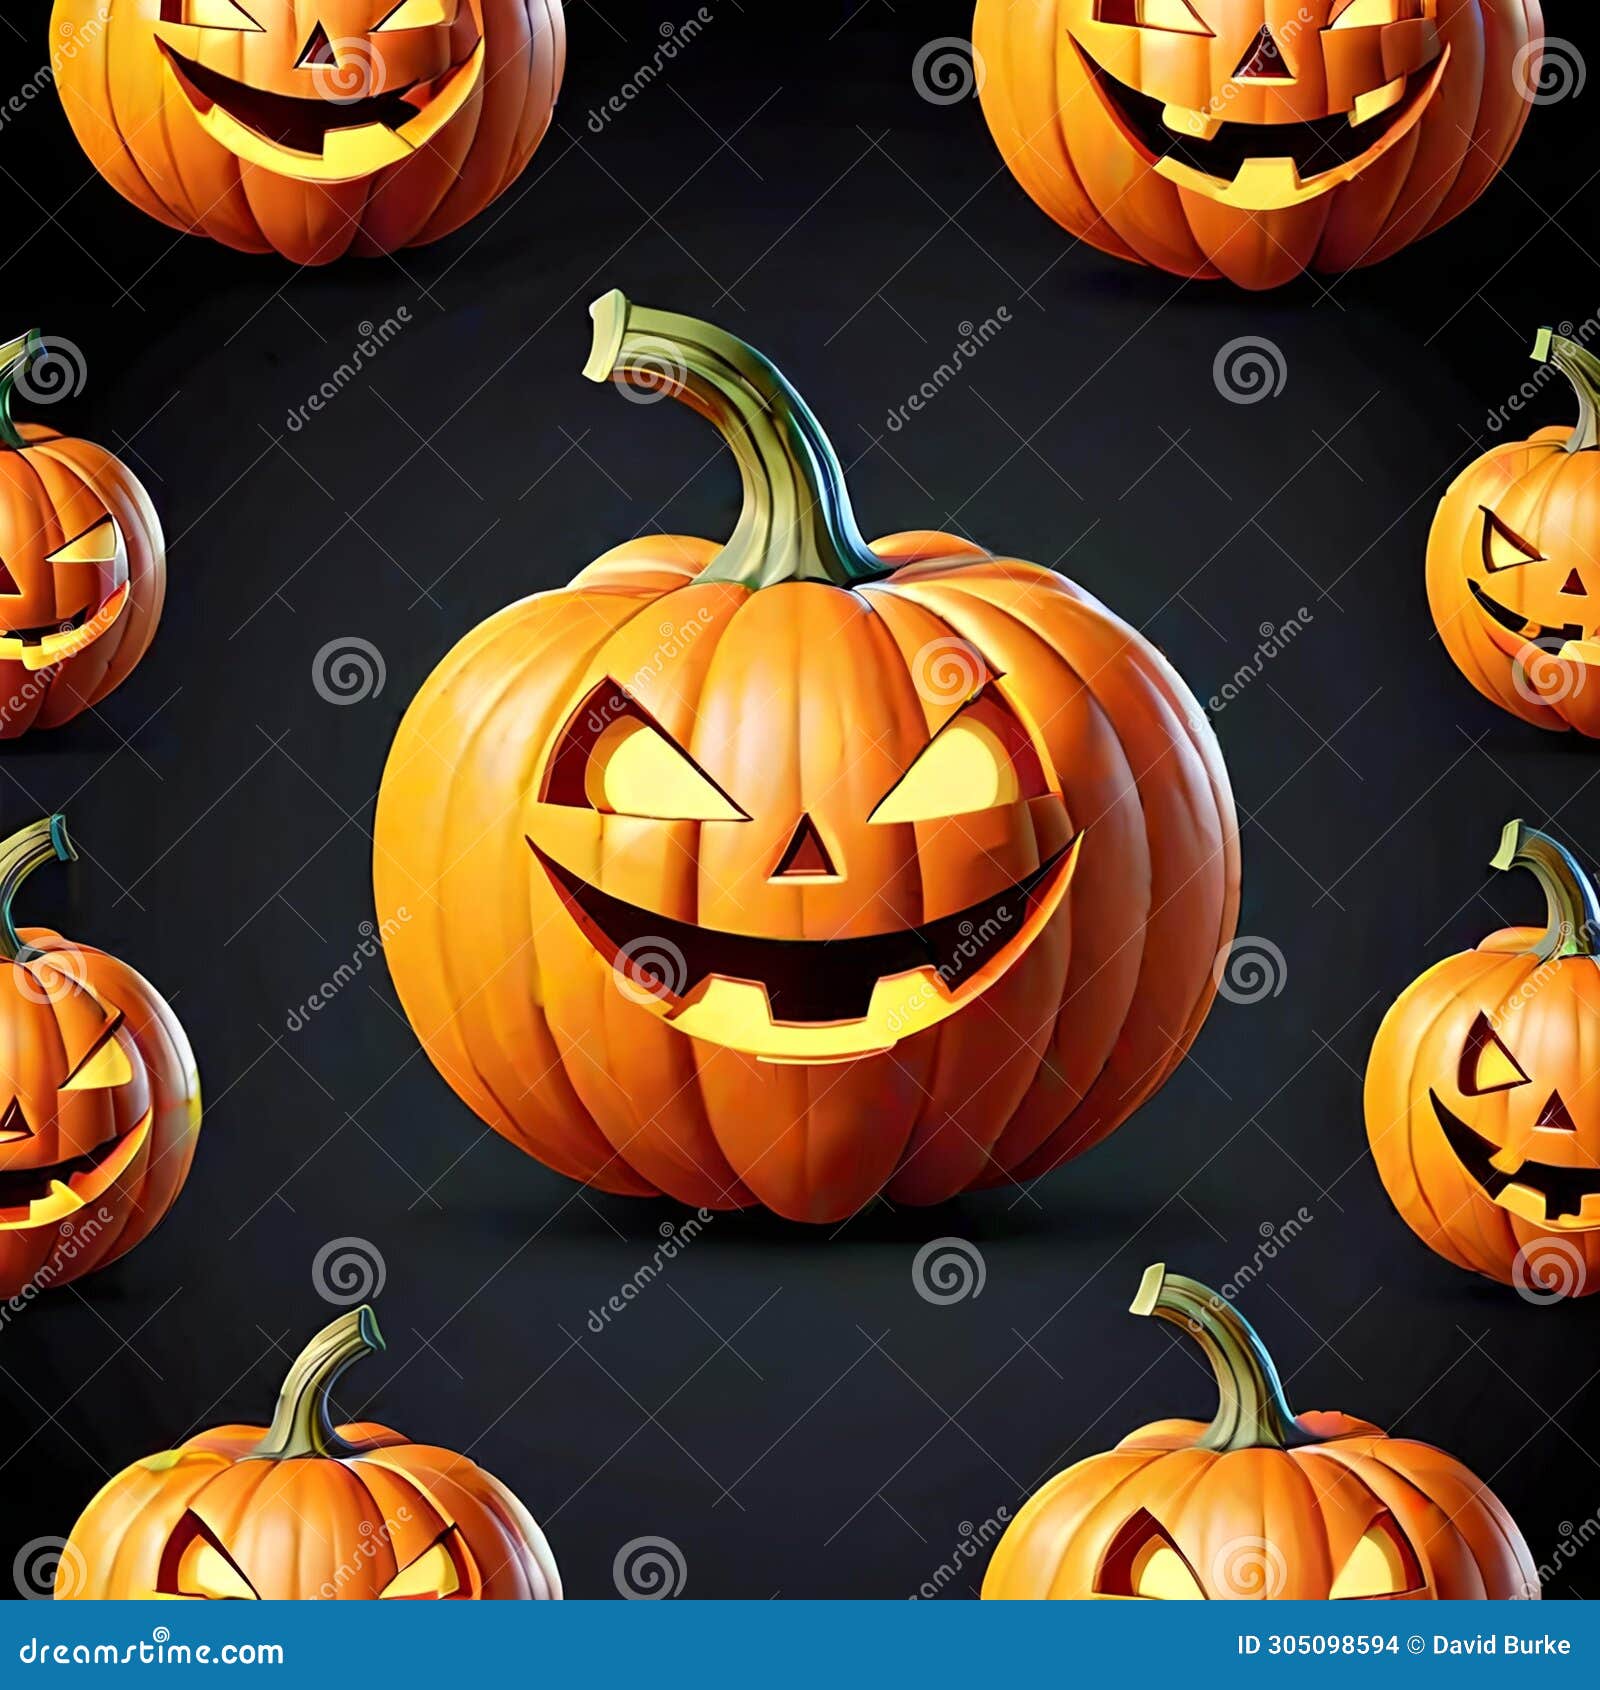 jack-o-lantern pumpkin food lighted spooks halloween